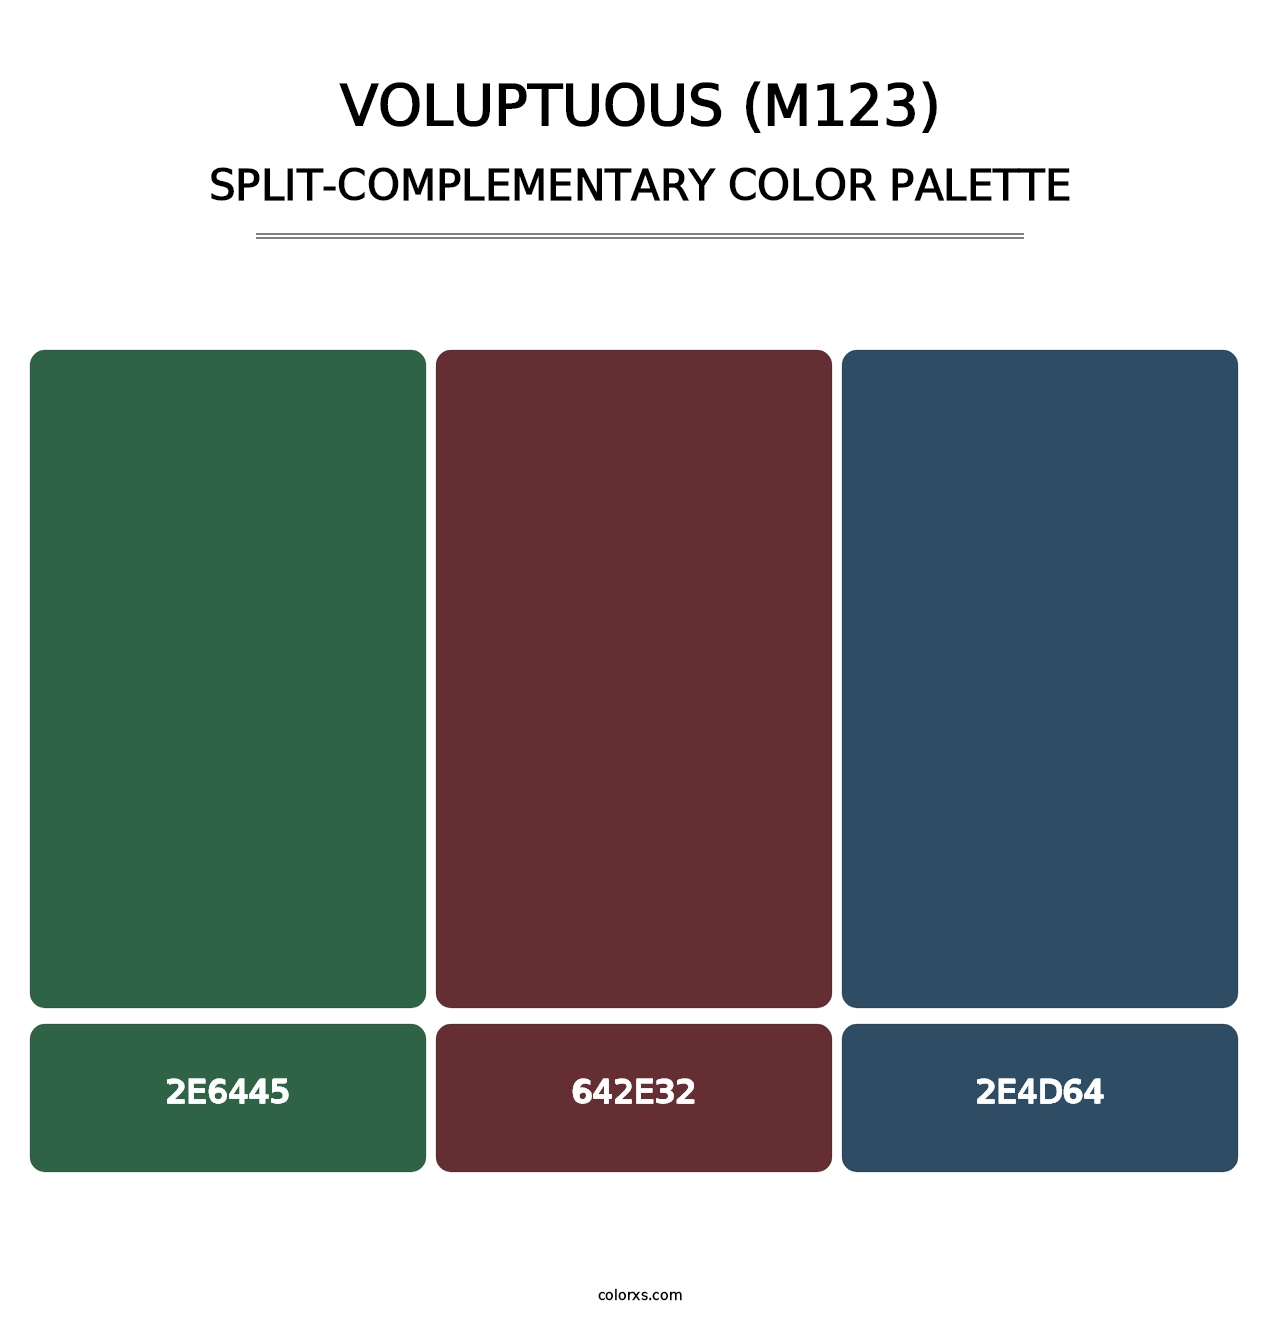 Voluptuous (M123) - Split-Complementary Color Palette